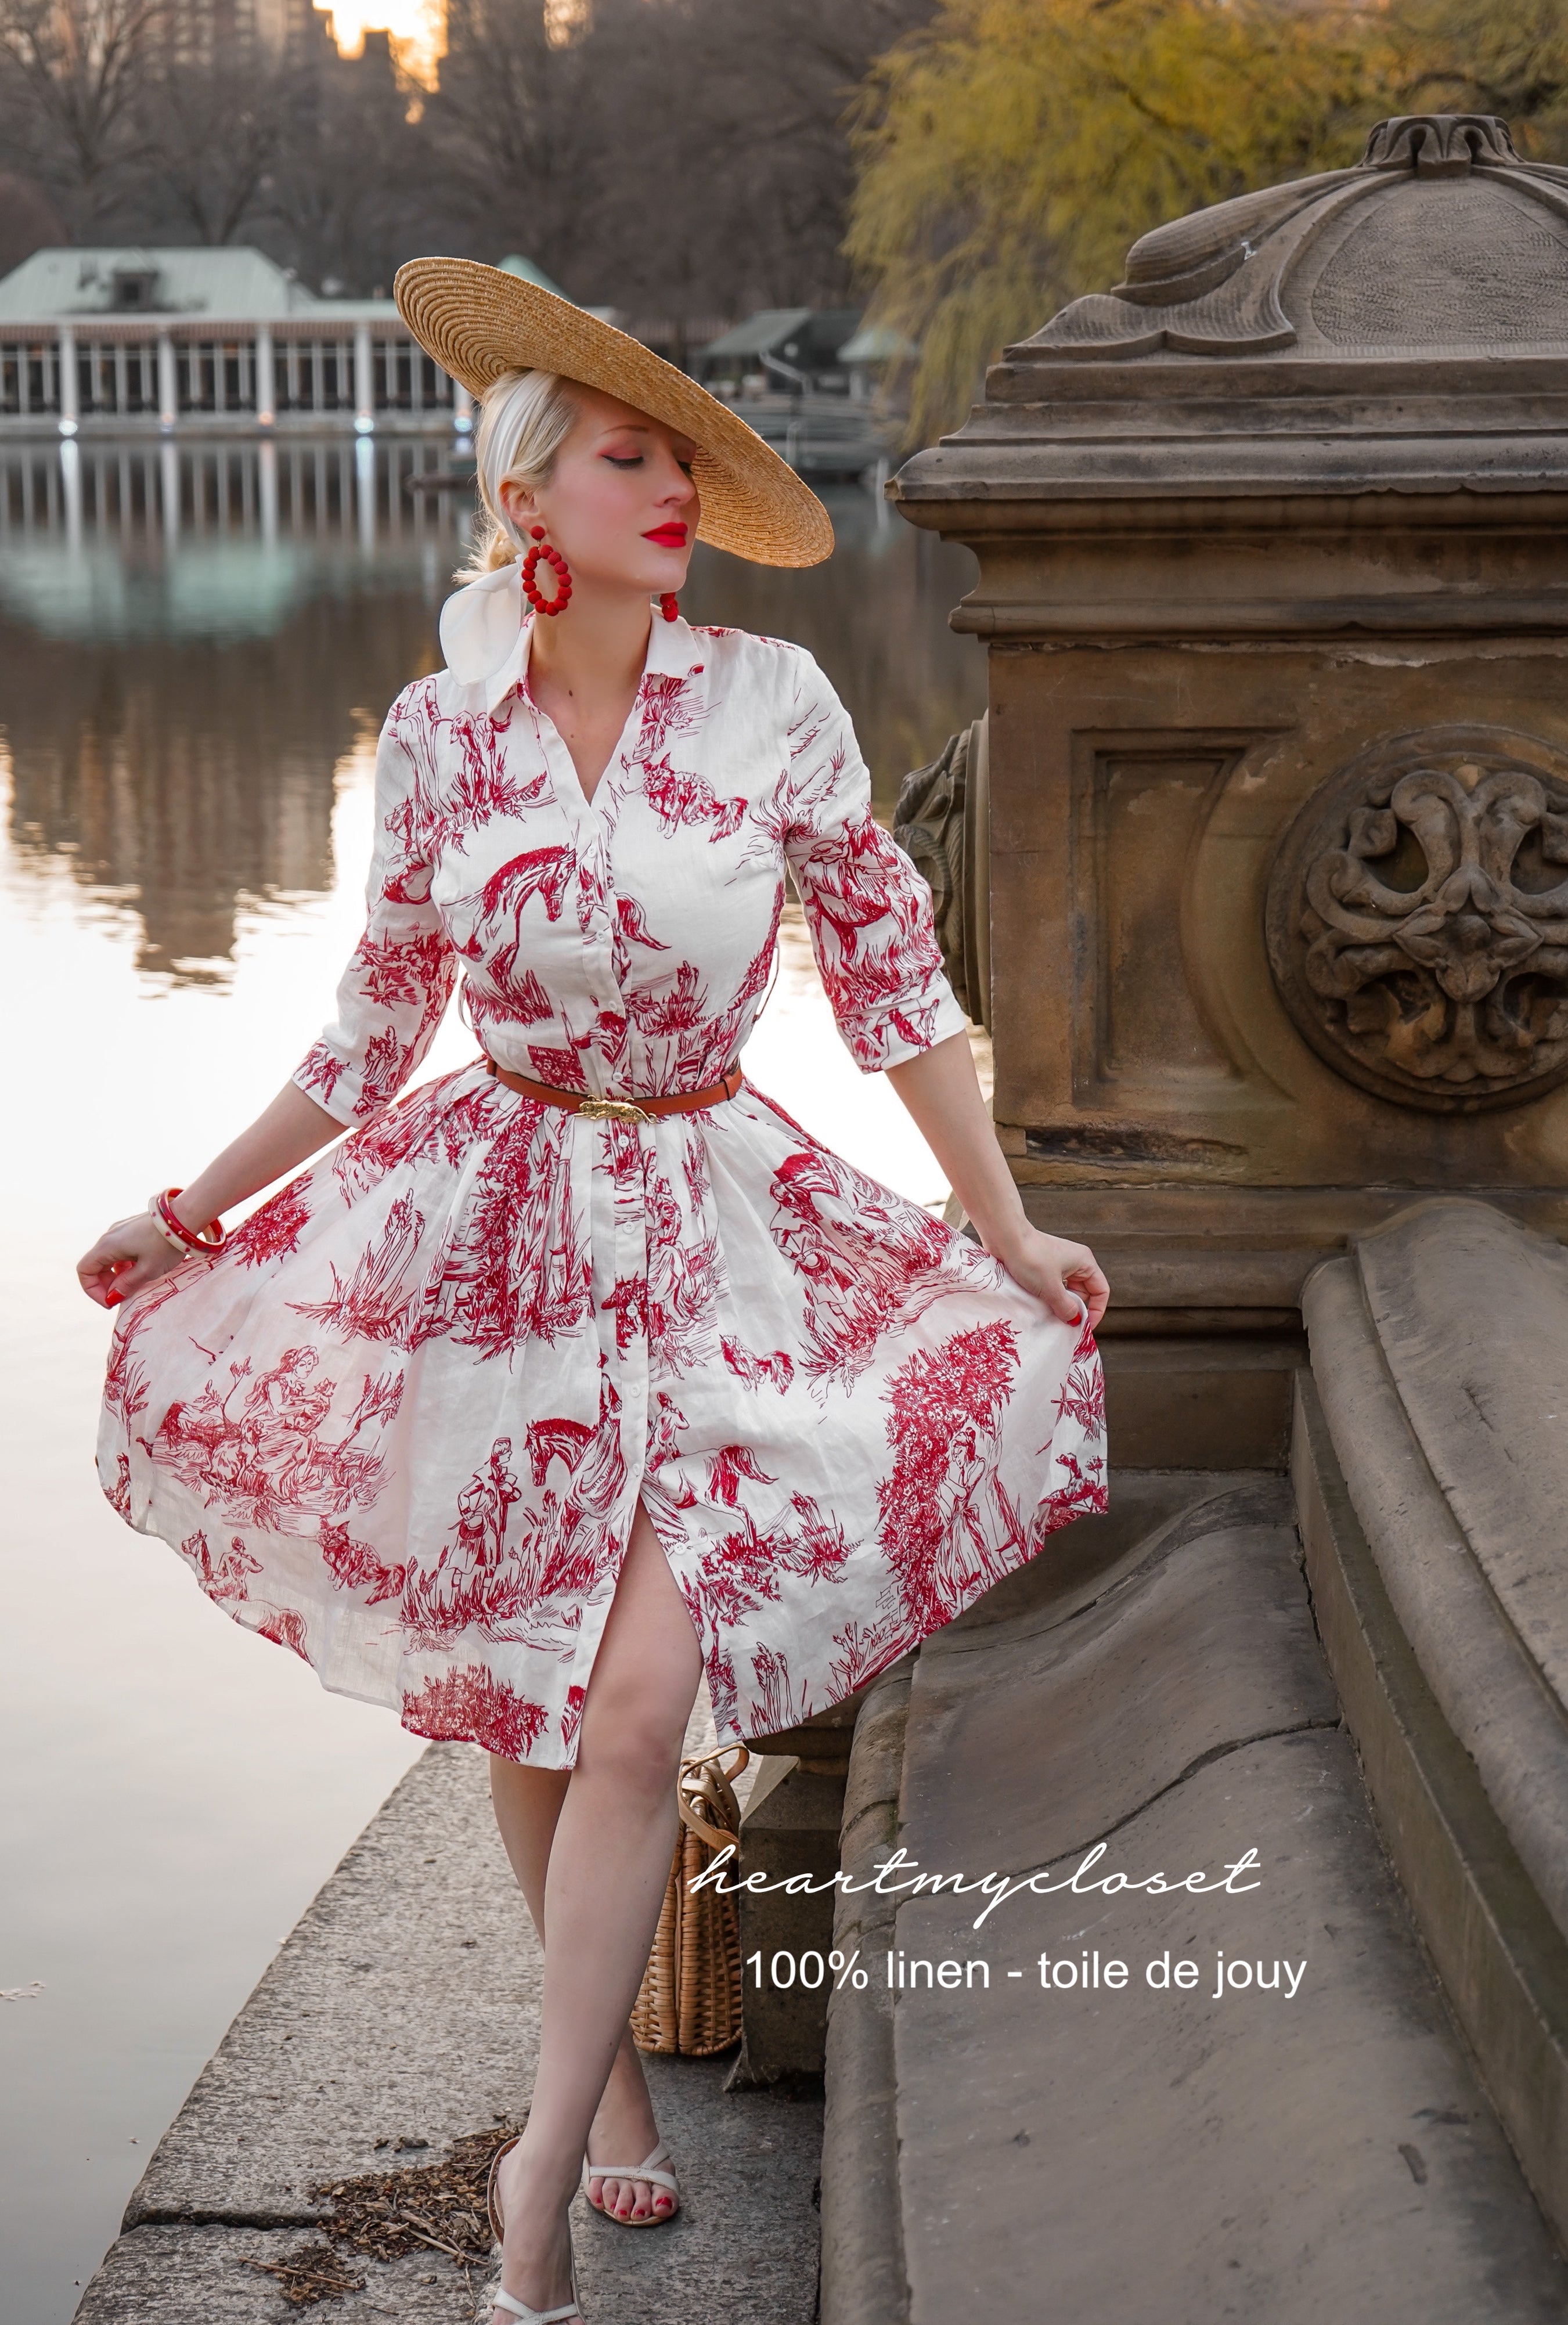 vintage inspired dresses